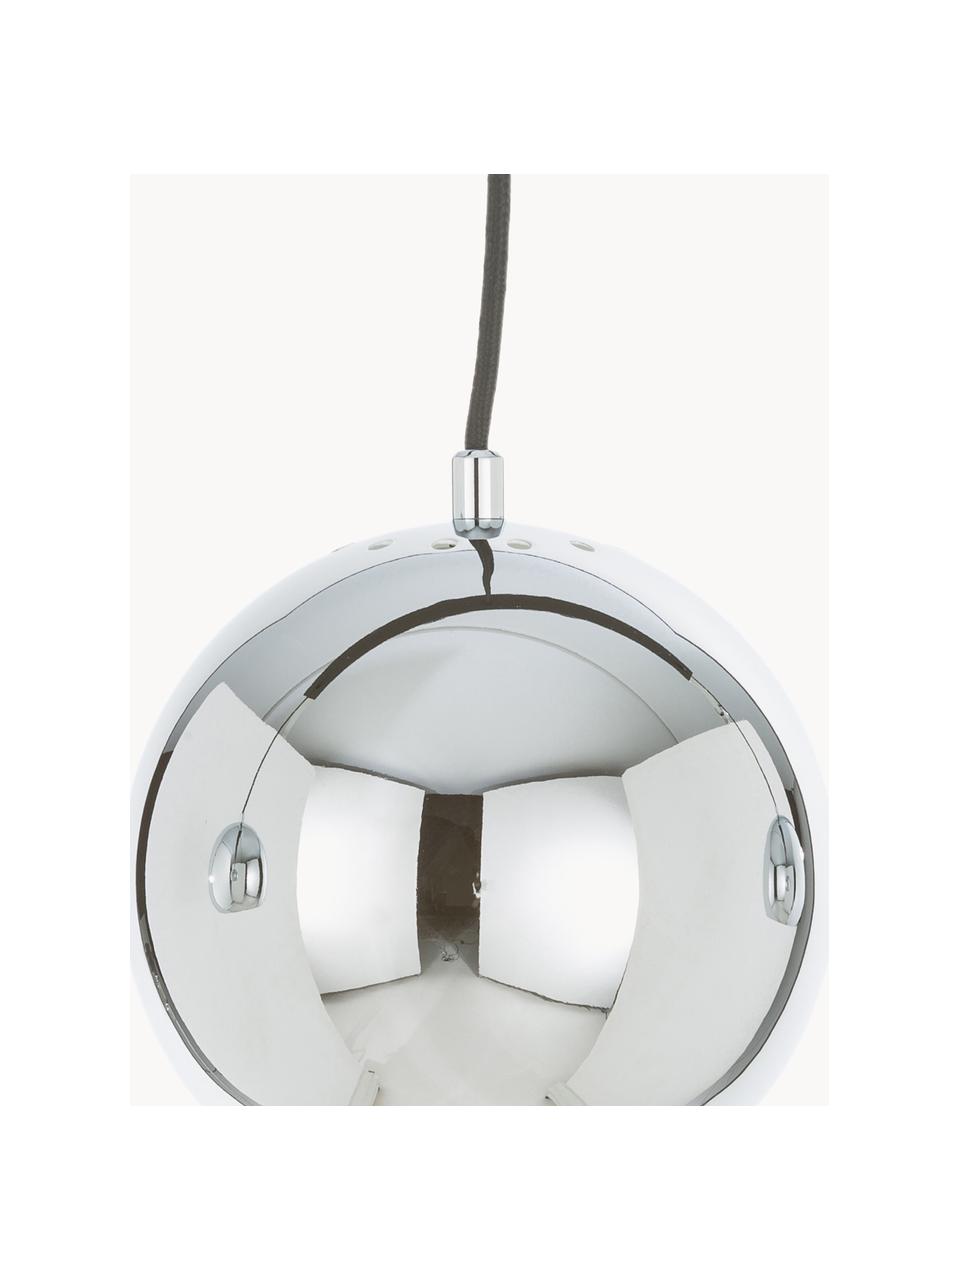 Grande suspension 3 lampes Ball, Argenté, larg. 100 x haut. 18 cm